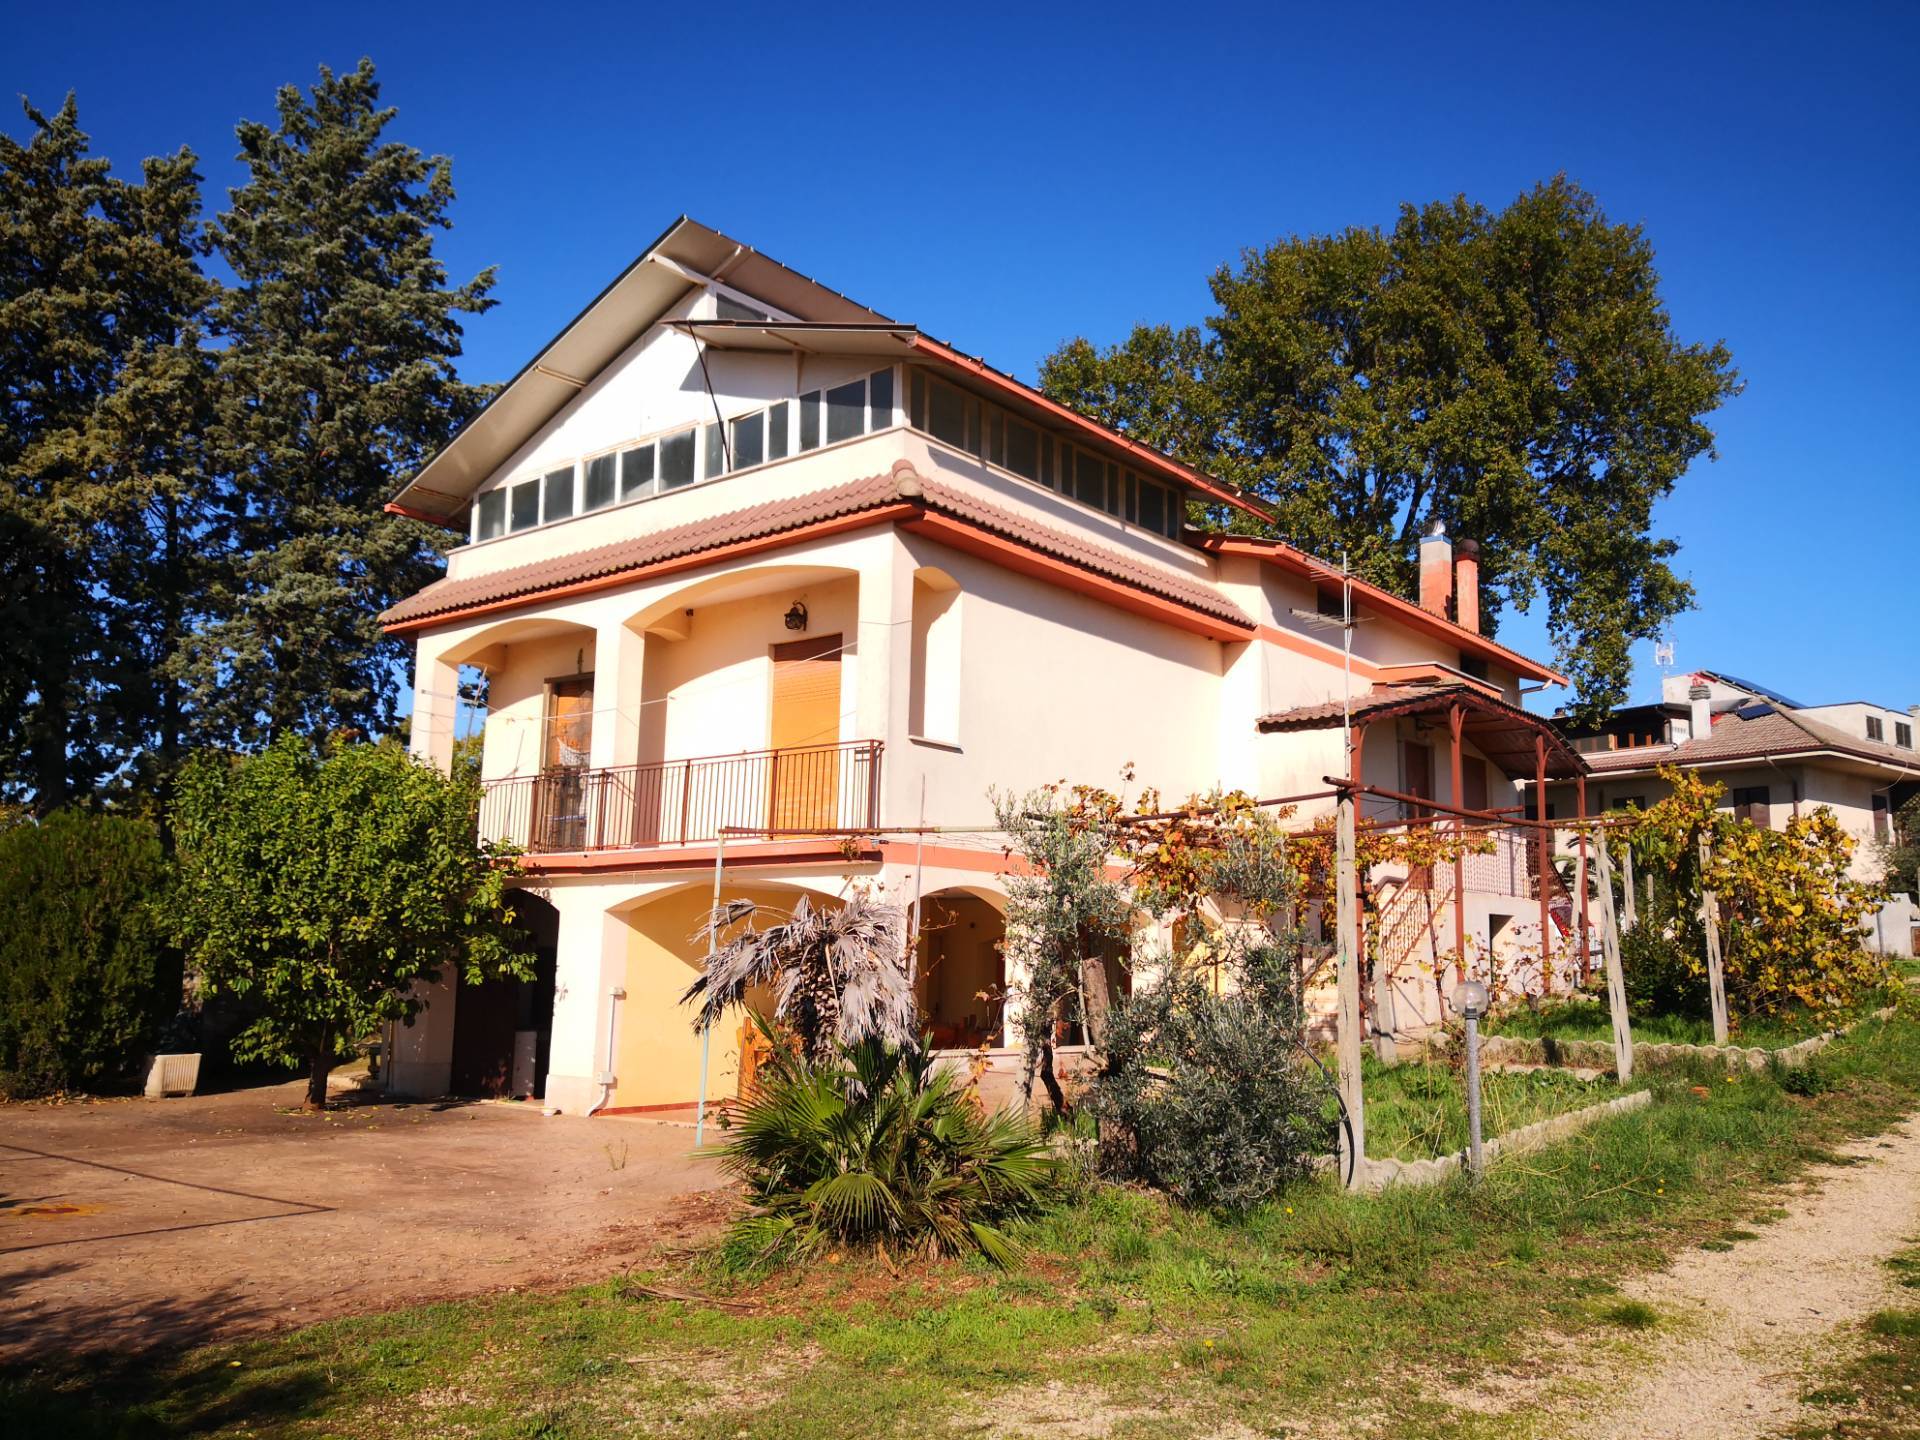 Villa in vendita a Sant'Angelo Romano, 6 locali, prezzo € 220.000 | CambioCasa.it